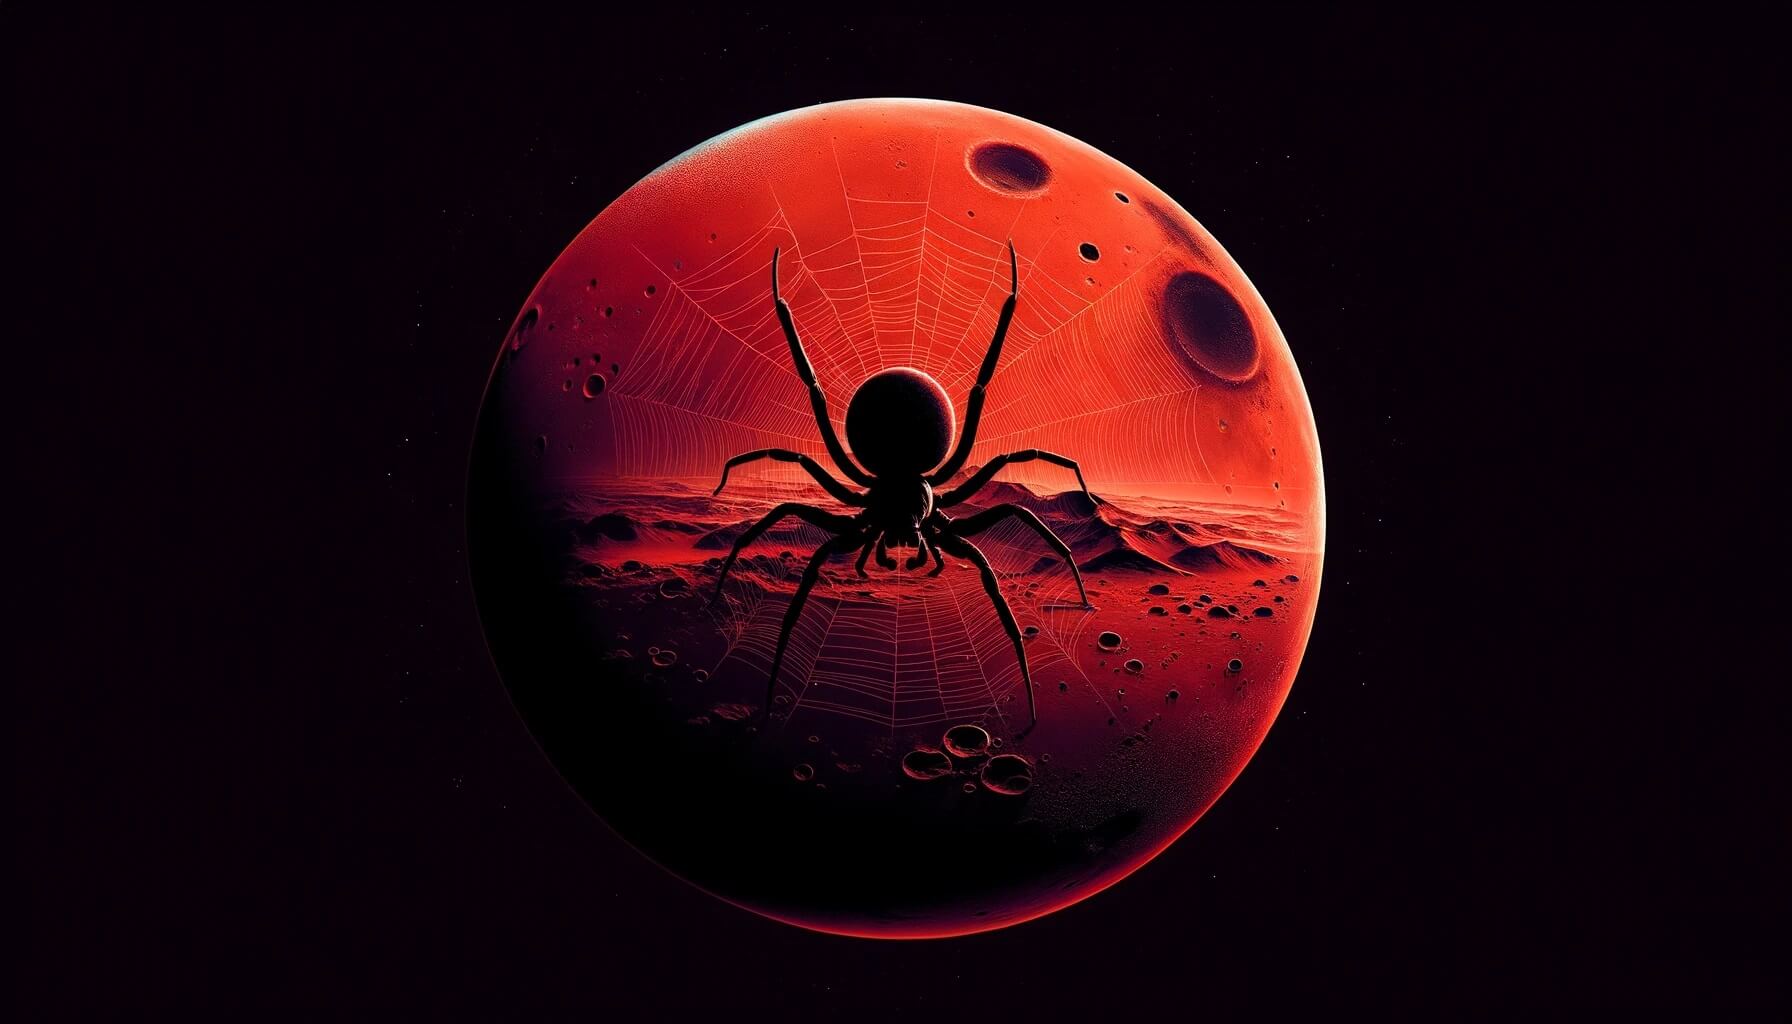 В интернете обсуждают фотографию с «пауками на Марсе». Что это такое на самом деле? Ученые увидели на Марсе нечто, похожее на кучу пауков. Изображение: нейросеть DALLE-3. Фото.